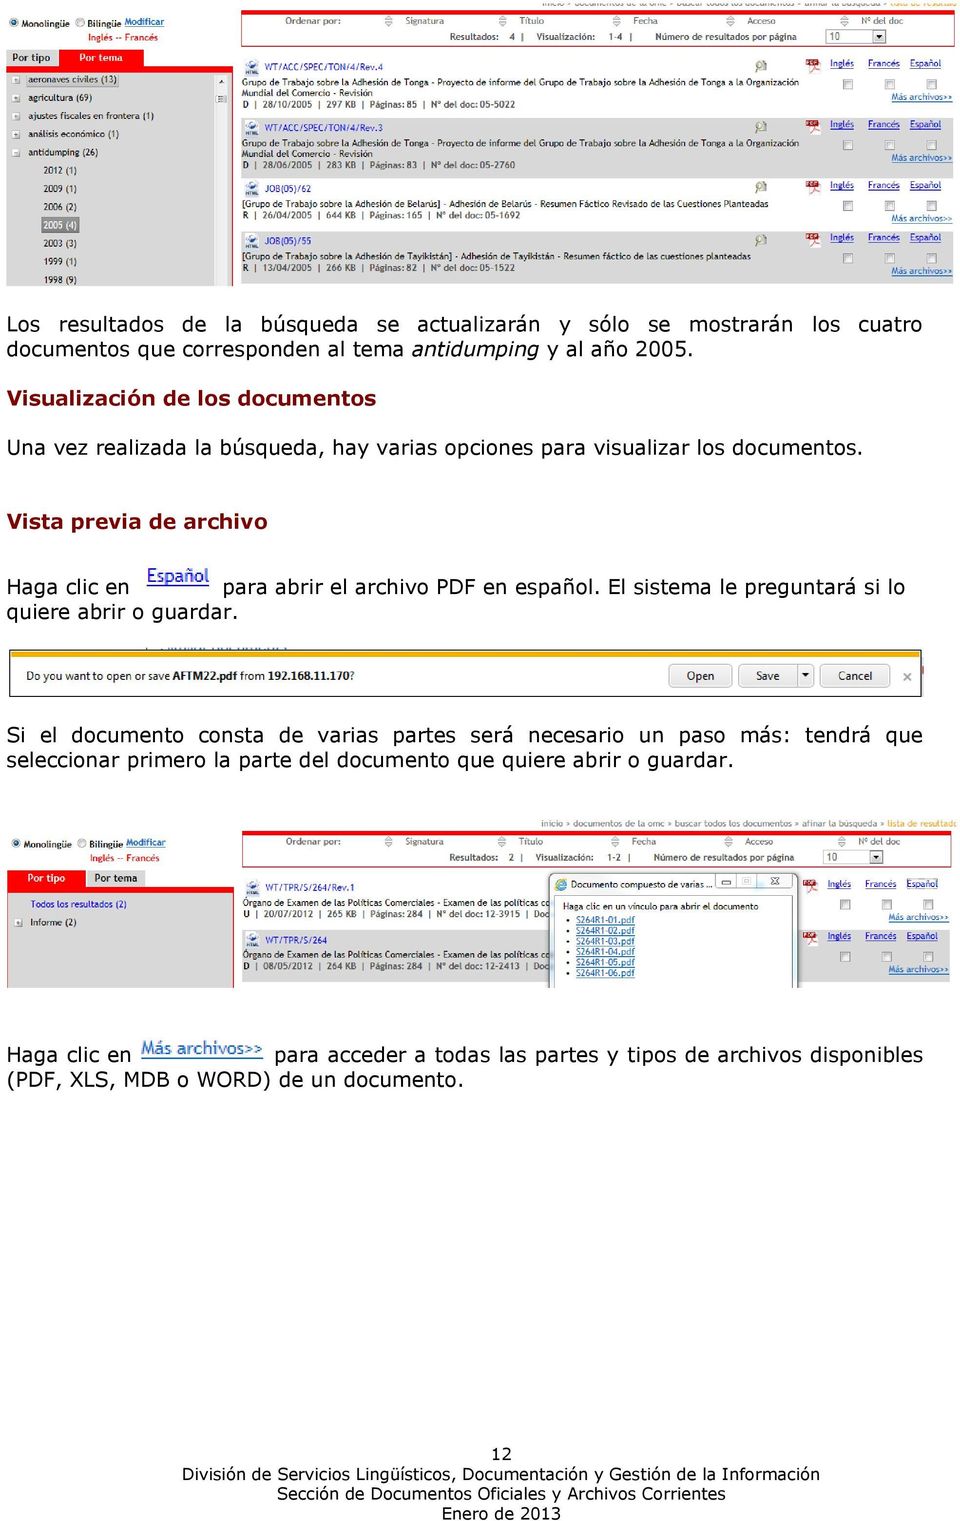 Vista previa de archivo Haga clic en para abrir el archivo PDF en español. El sistema le preguntará si lo quiere abrir o guardar.